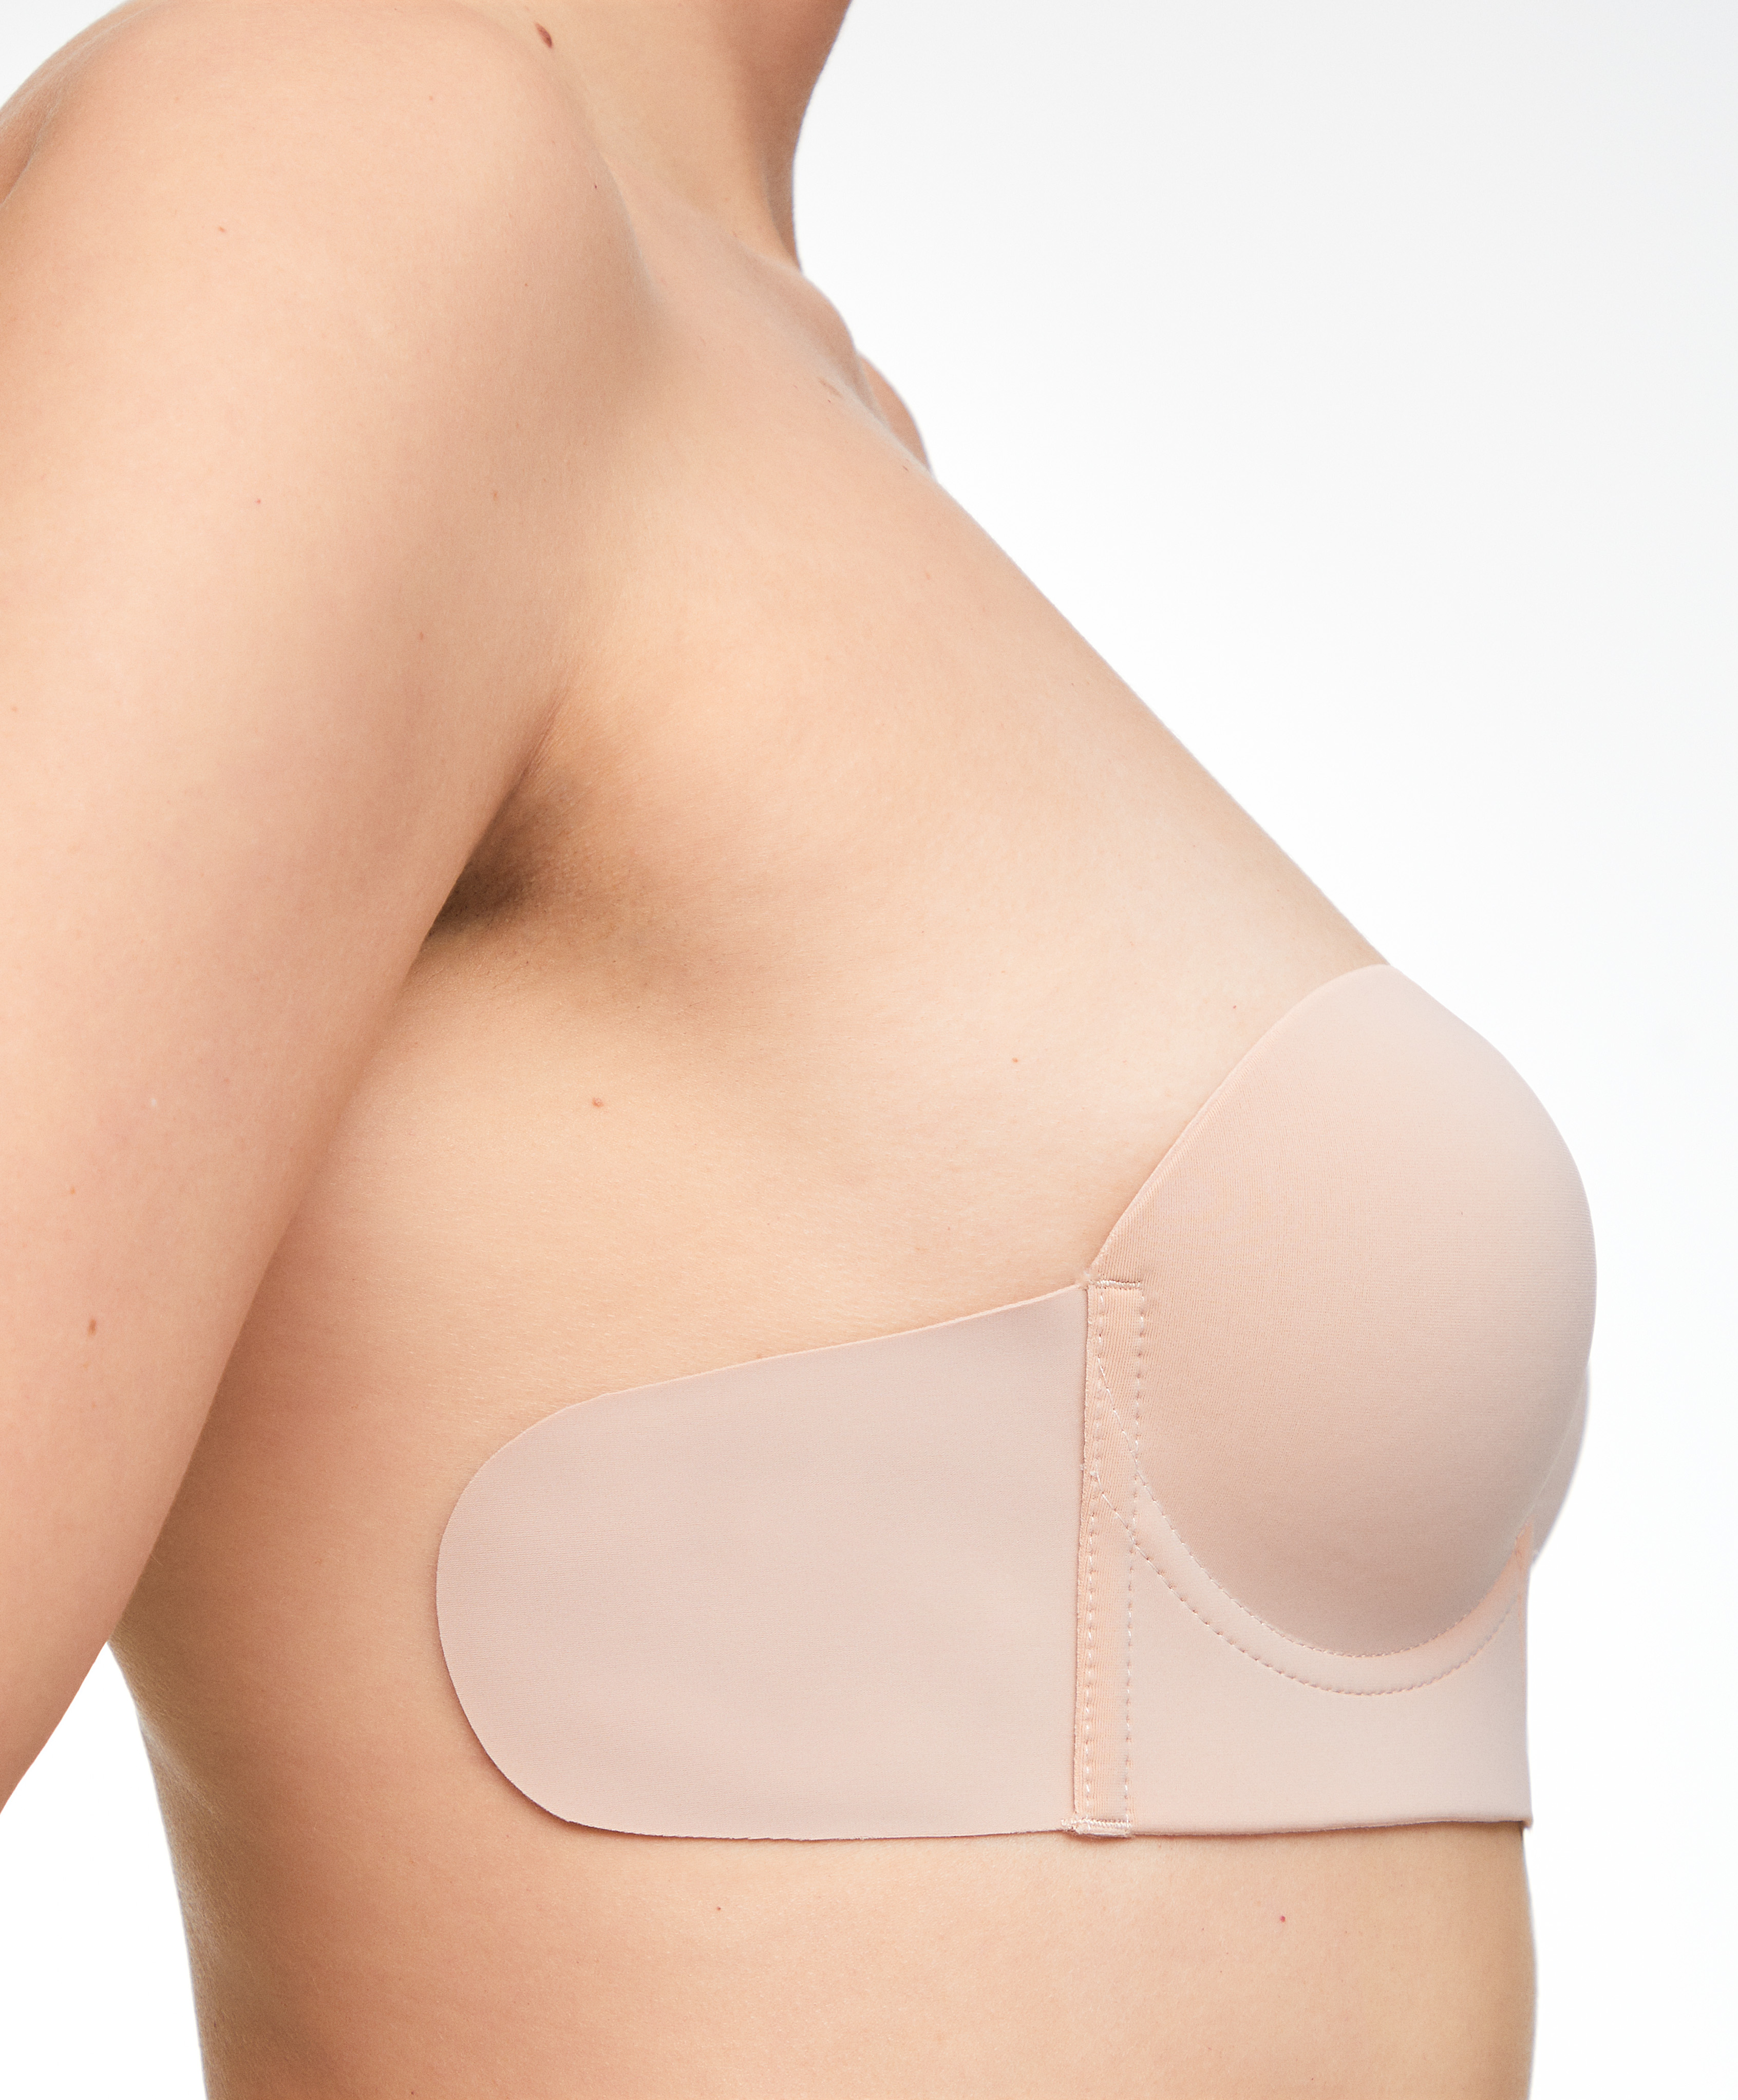 U-neck fabric adhesive bra